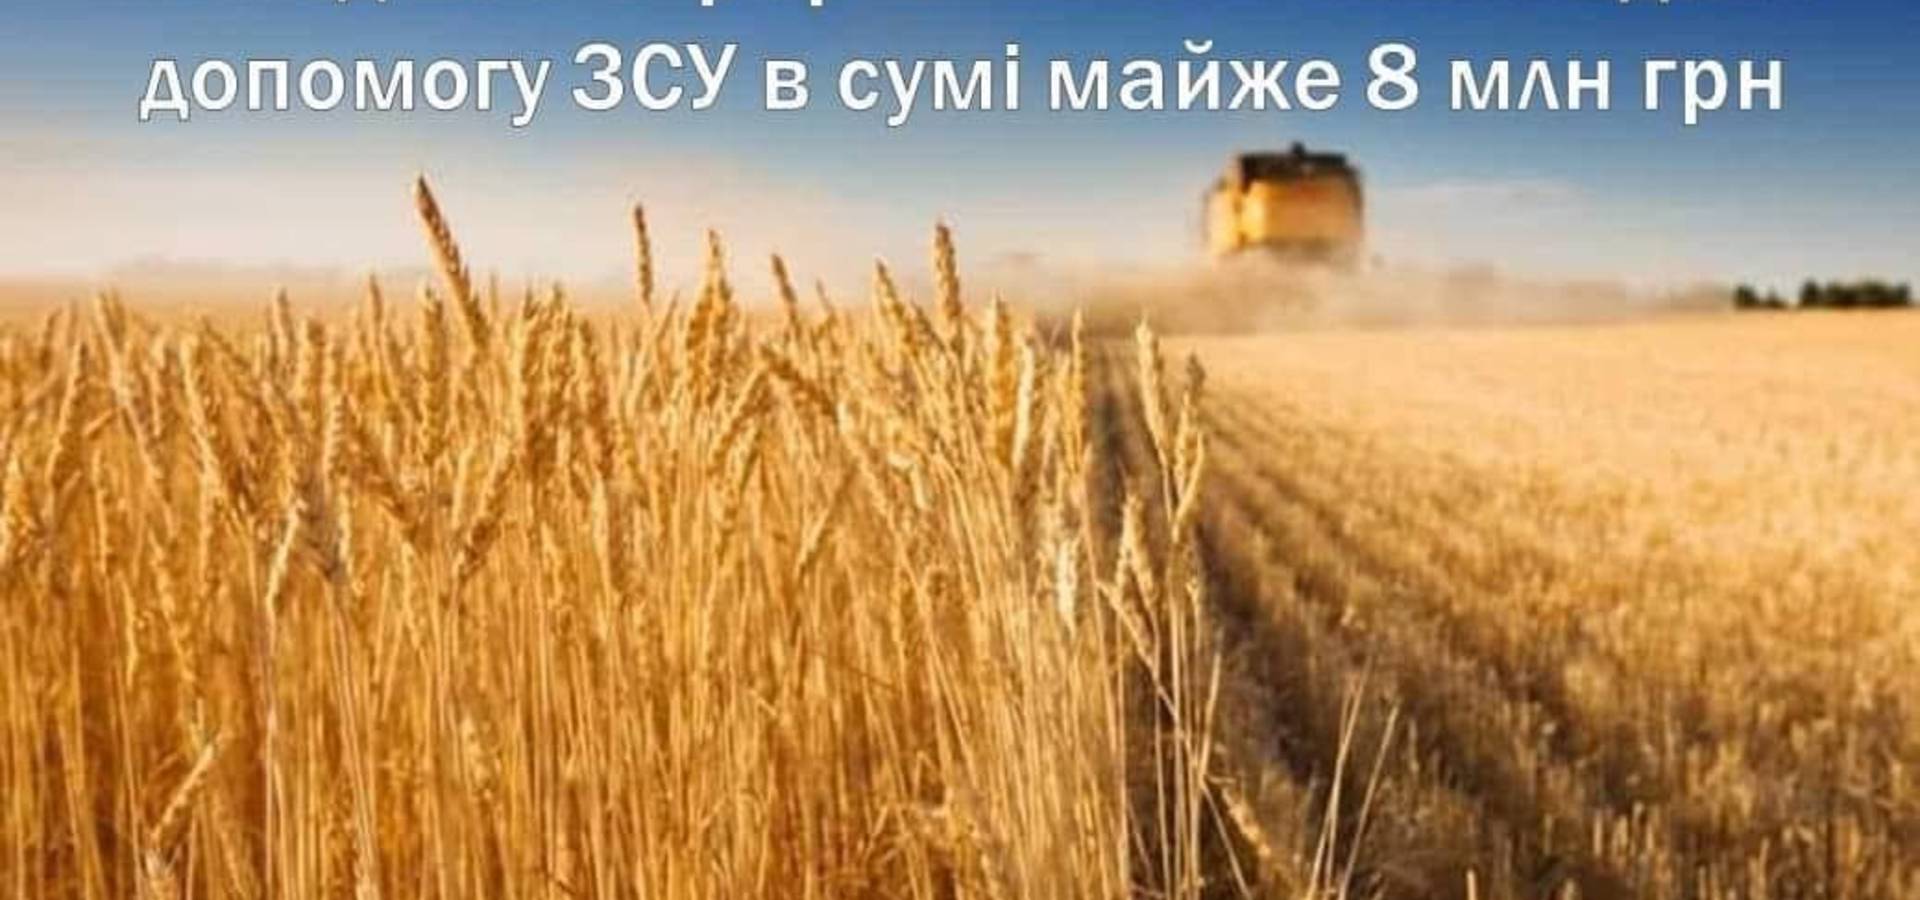 Аграрії Вінниччини надали майже 8 мільйонів гривень на допомогу ЗСУ